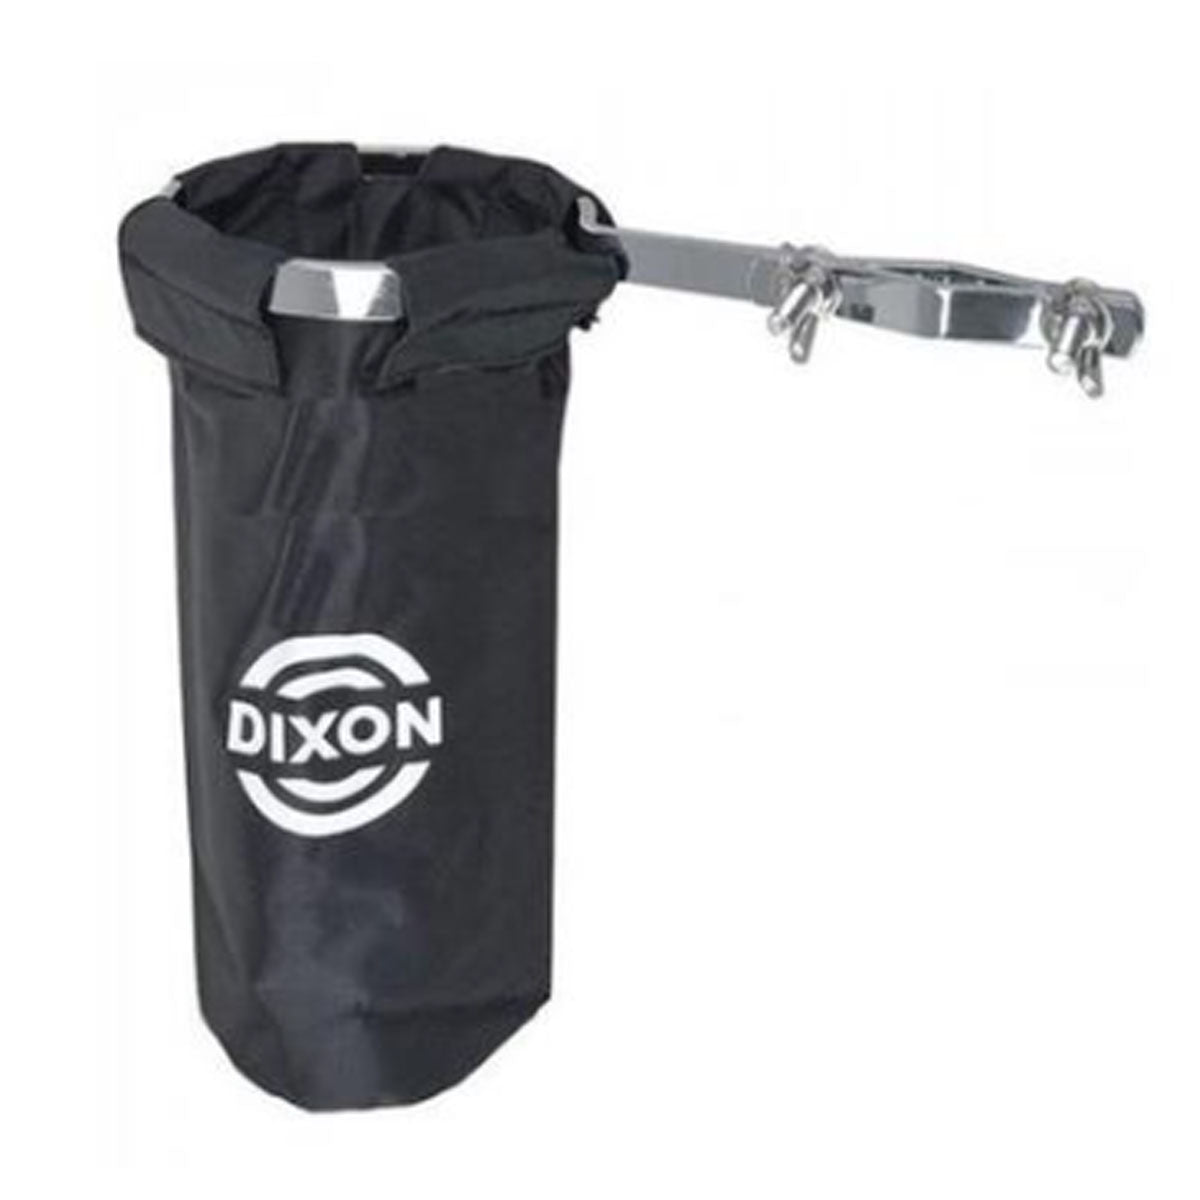 Dixon Drum Stick Holder - PXAHHP